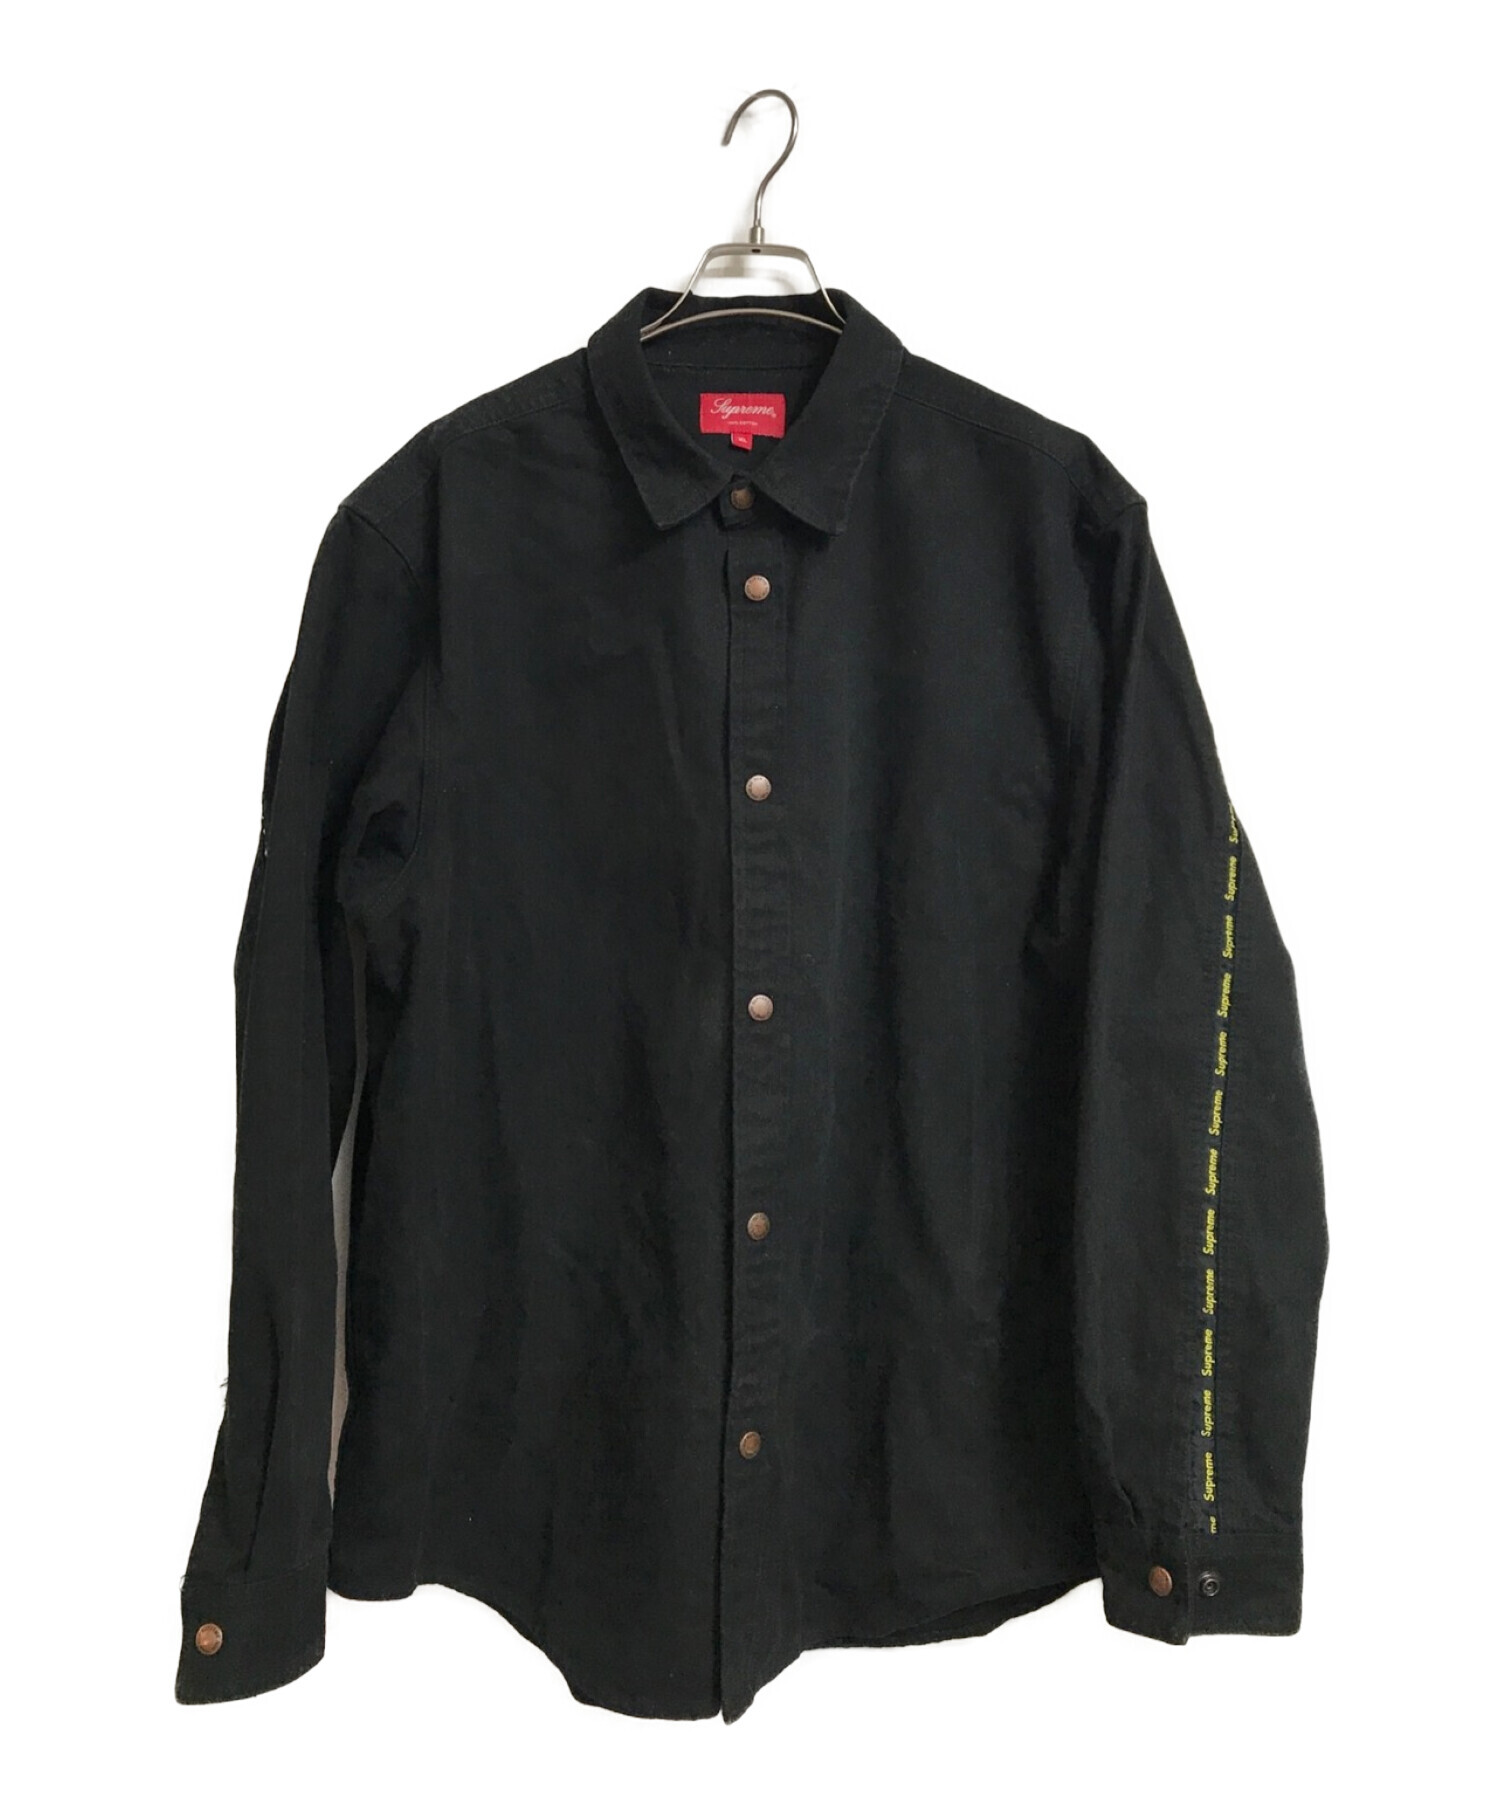 SUPREME (シュプリーム) LOGO Taping Work shirt ブラック サイズ:XL